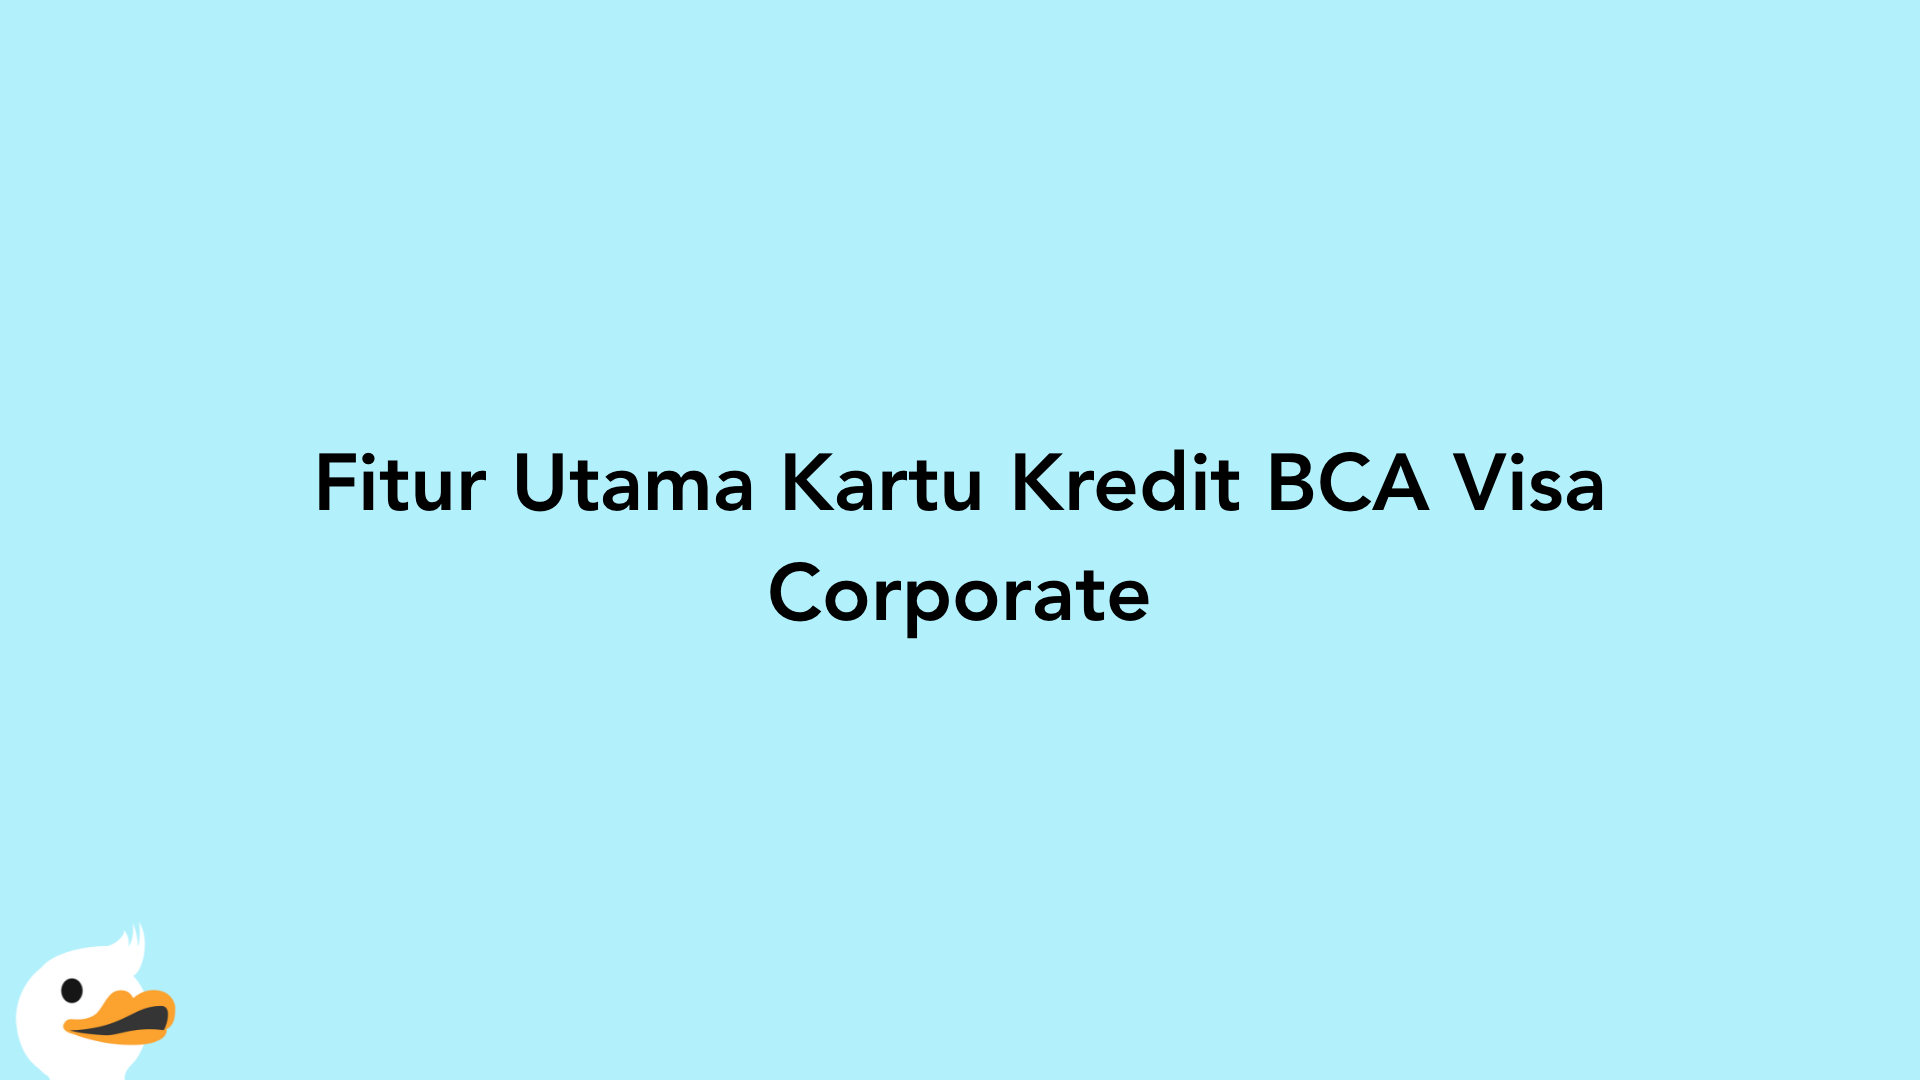 Fitur Utama Kartu Kredit BCA Visa Corporate